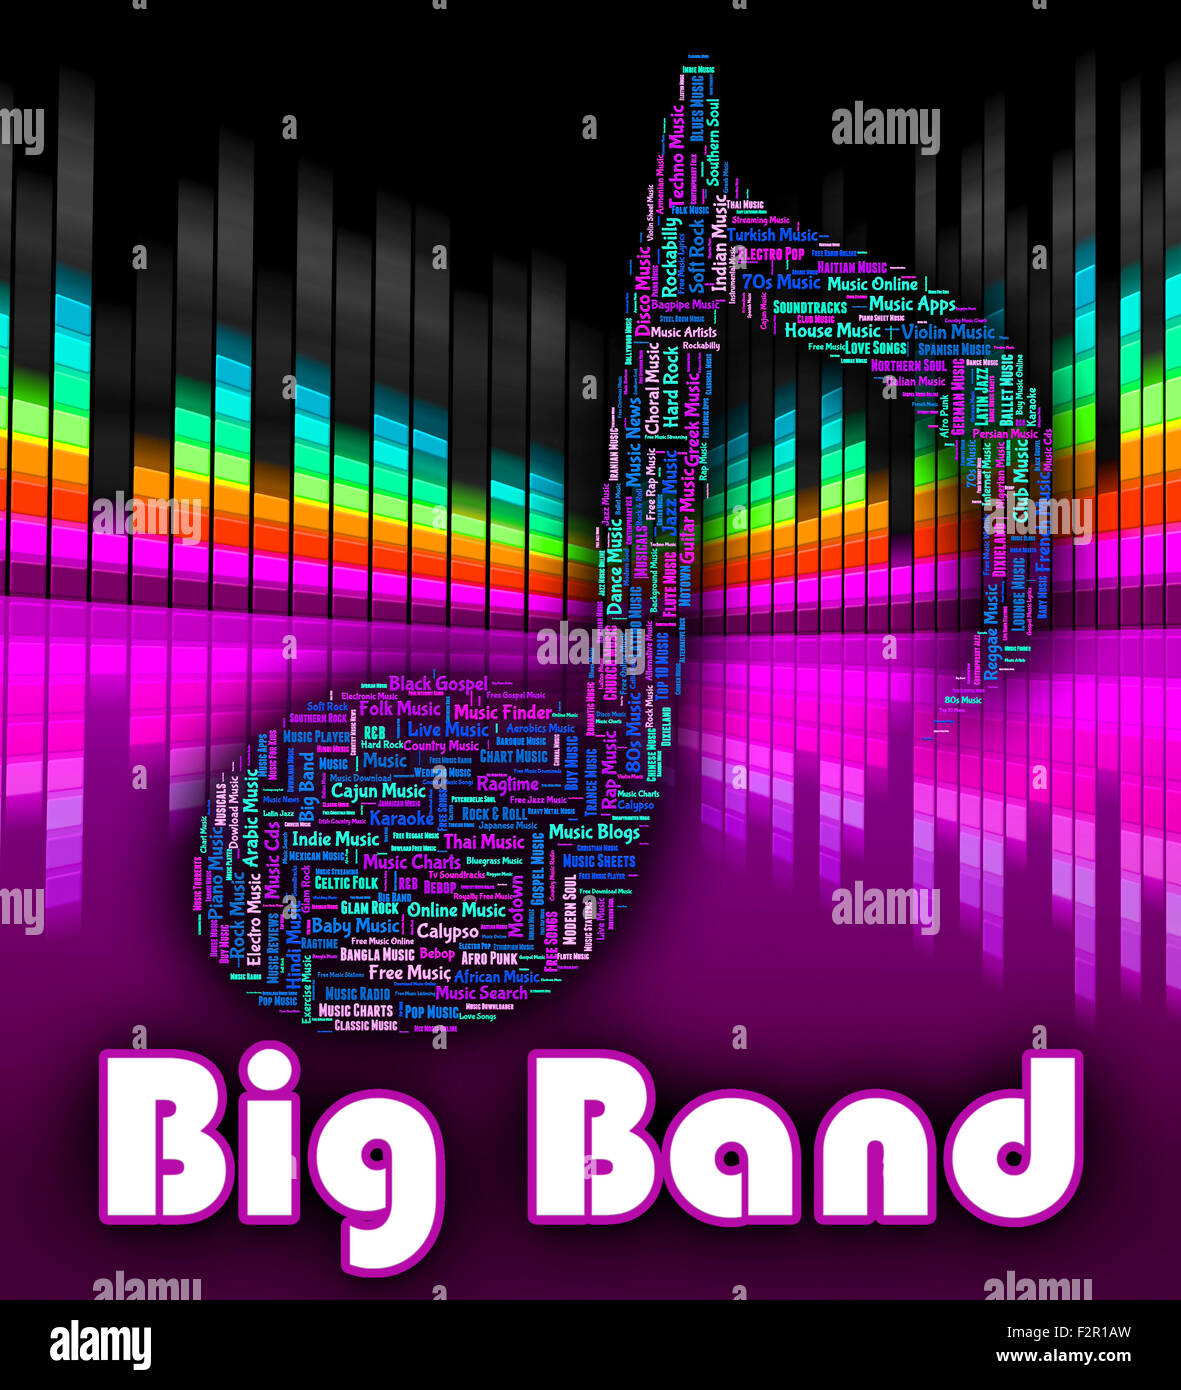 Big Band Charts Free Download